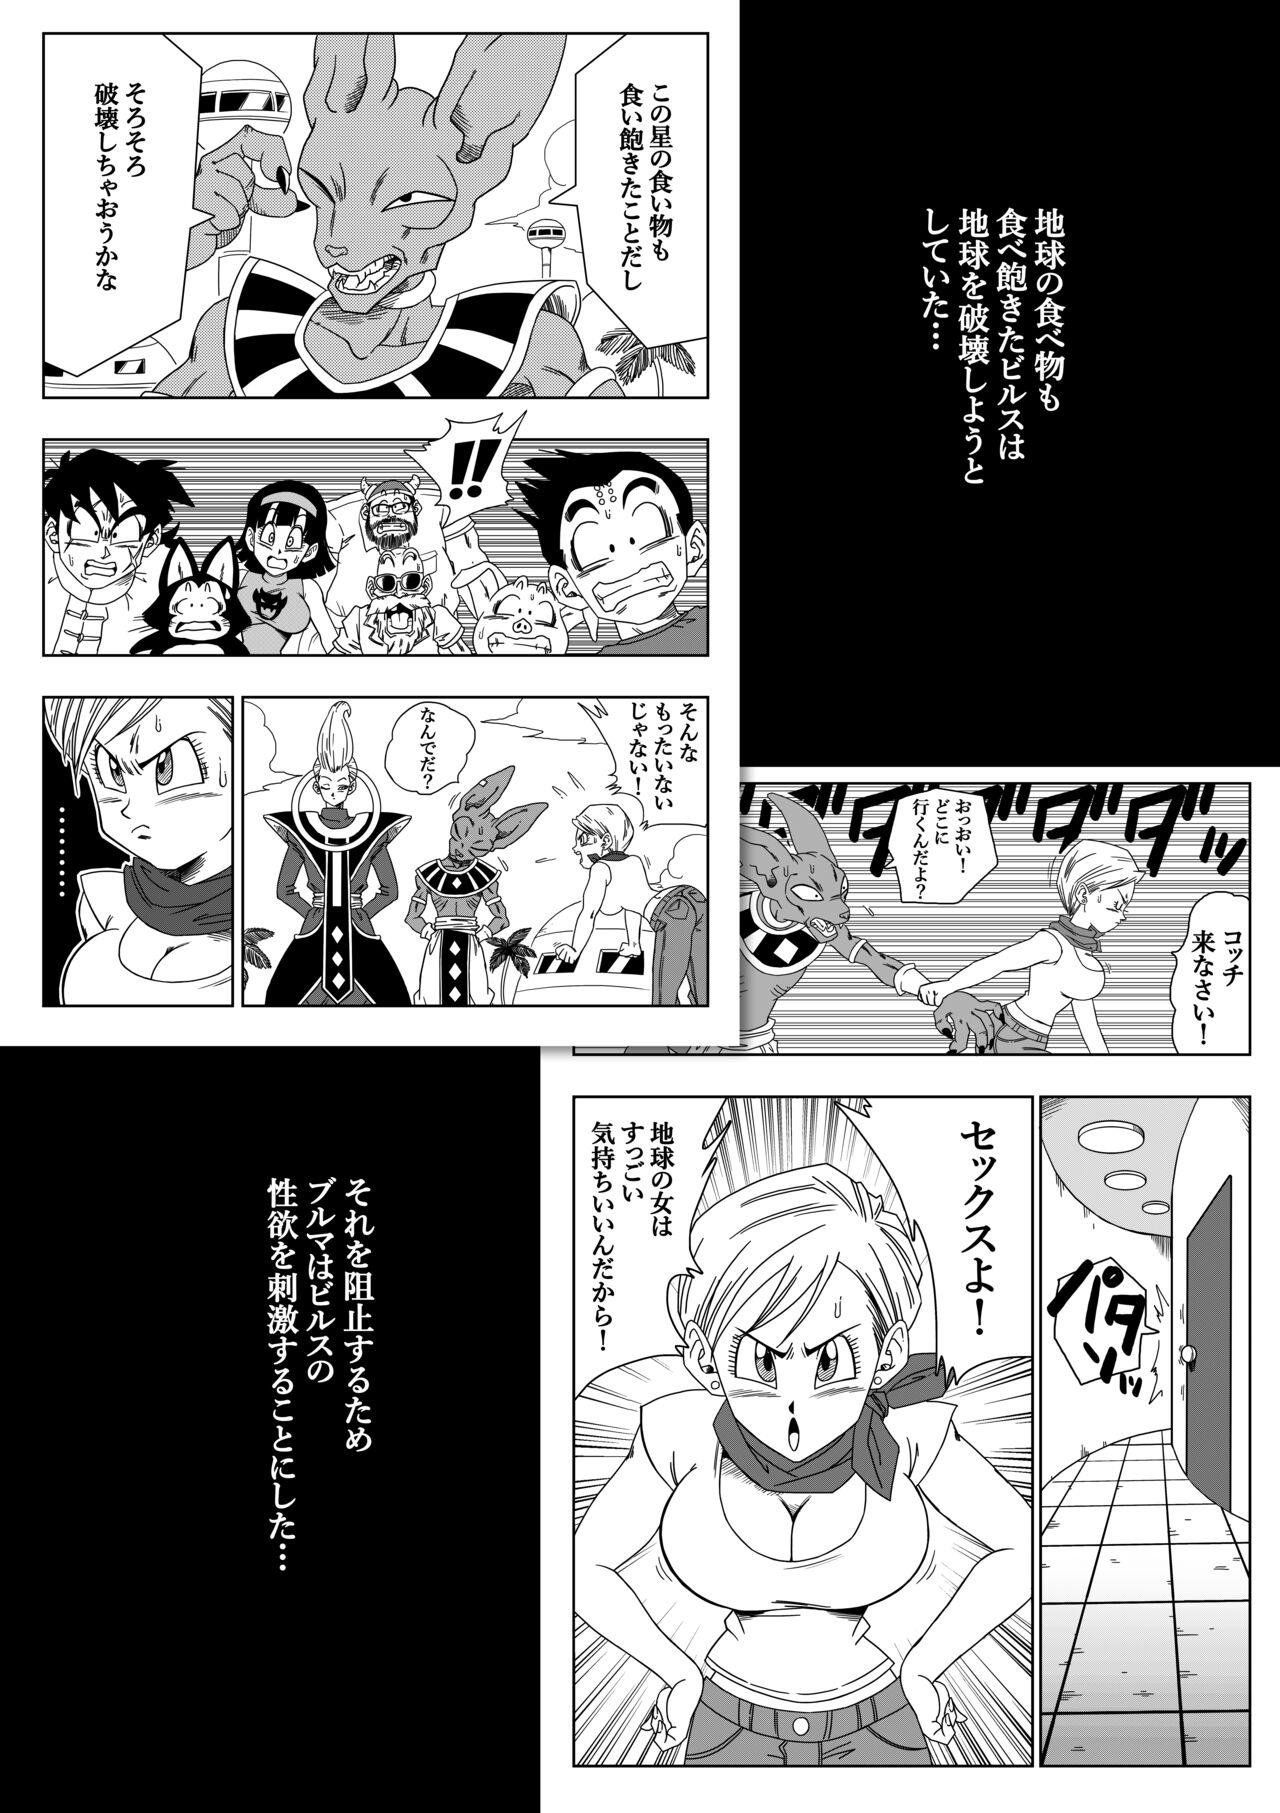 Bigtits 誰もビ○スに逆らえない! N18 VS BEERUS JAPANESE - Dragon ball Dragon ball super Thick - Page 2